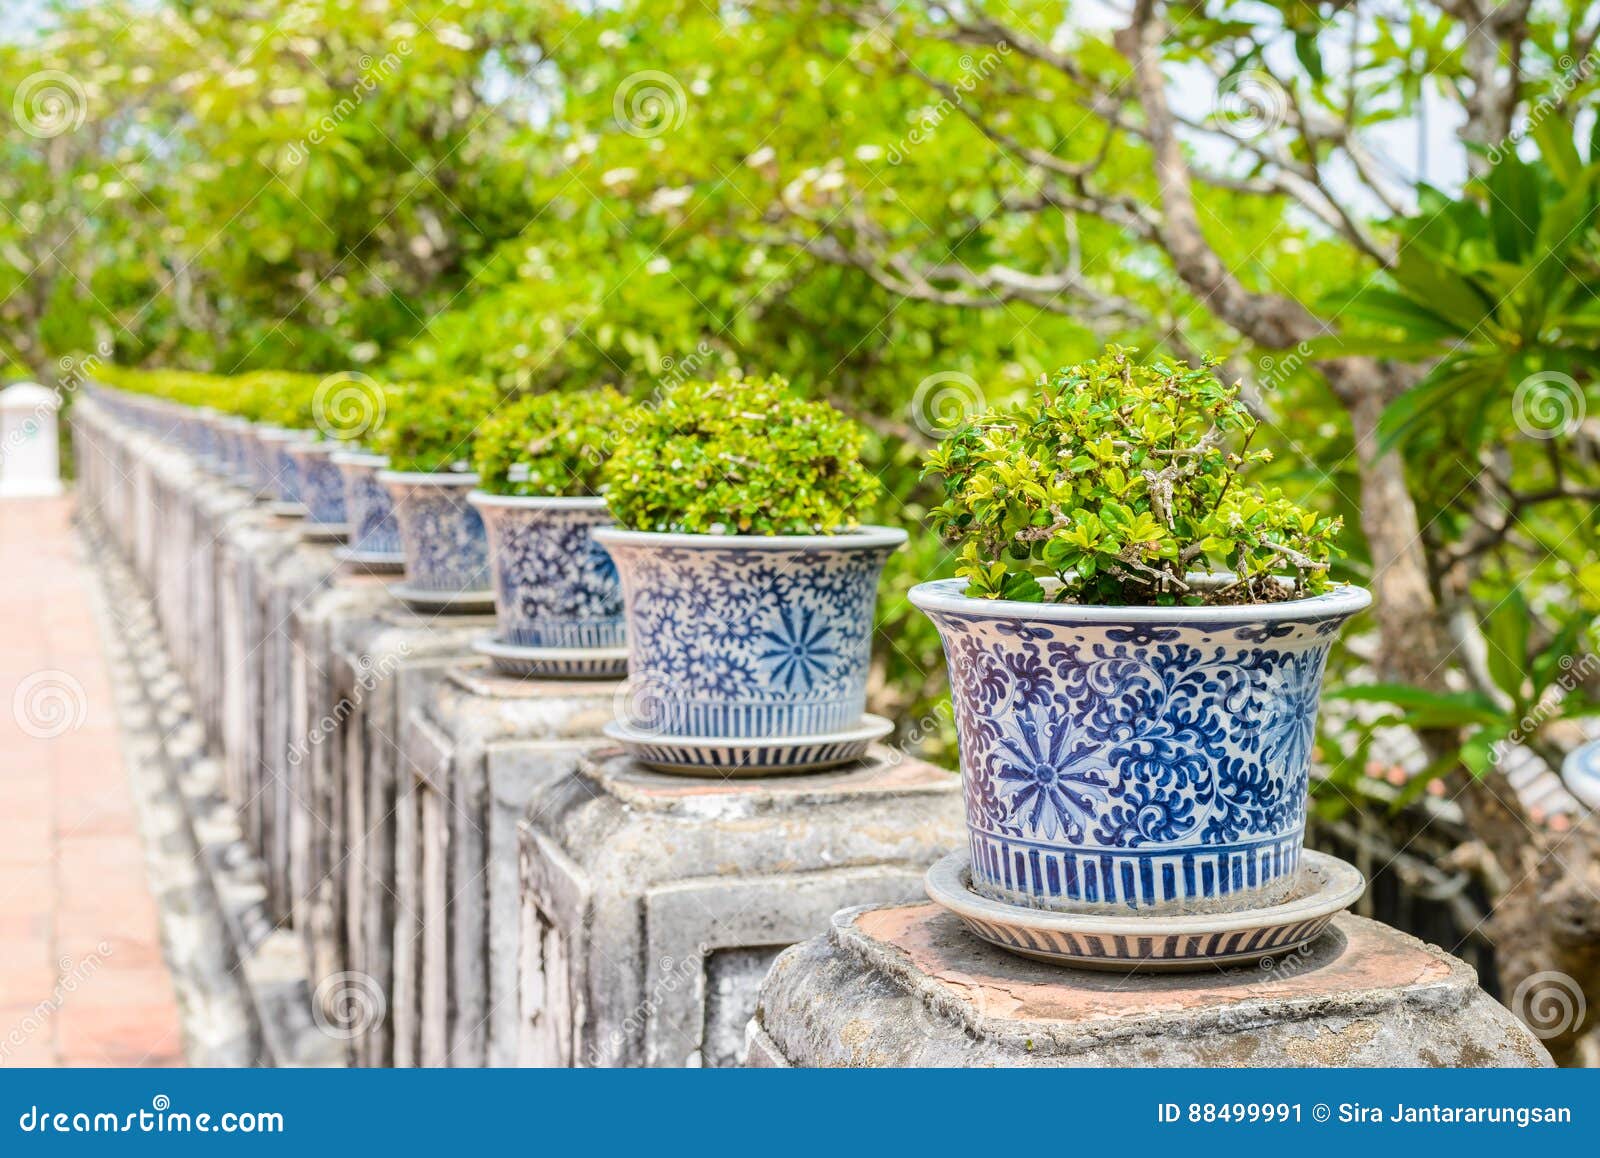 盆景，暹罗粗灌木在瓷罐